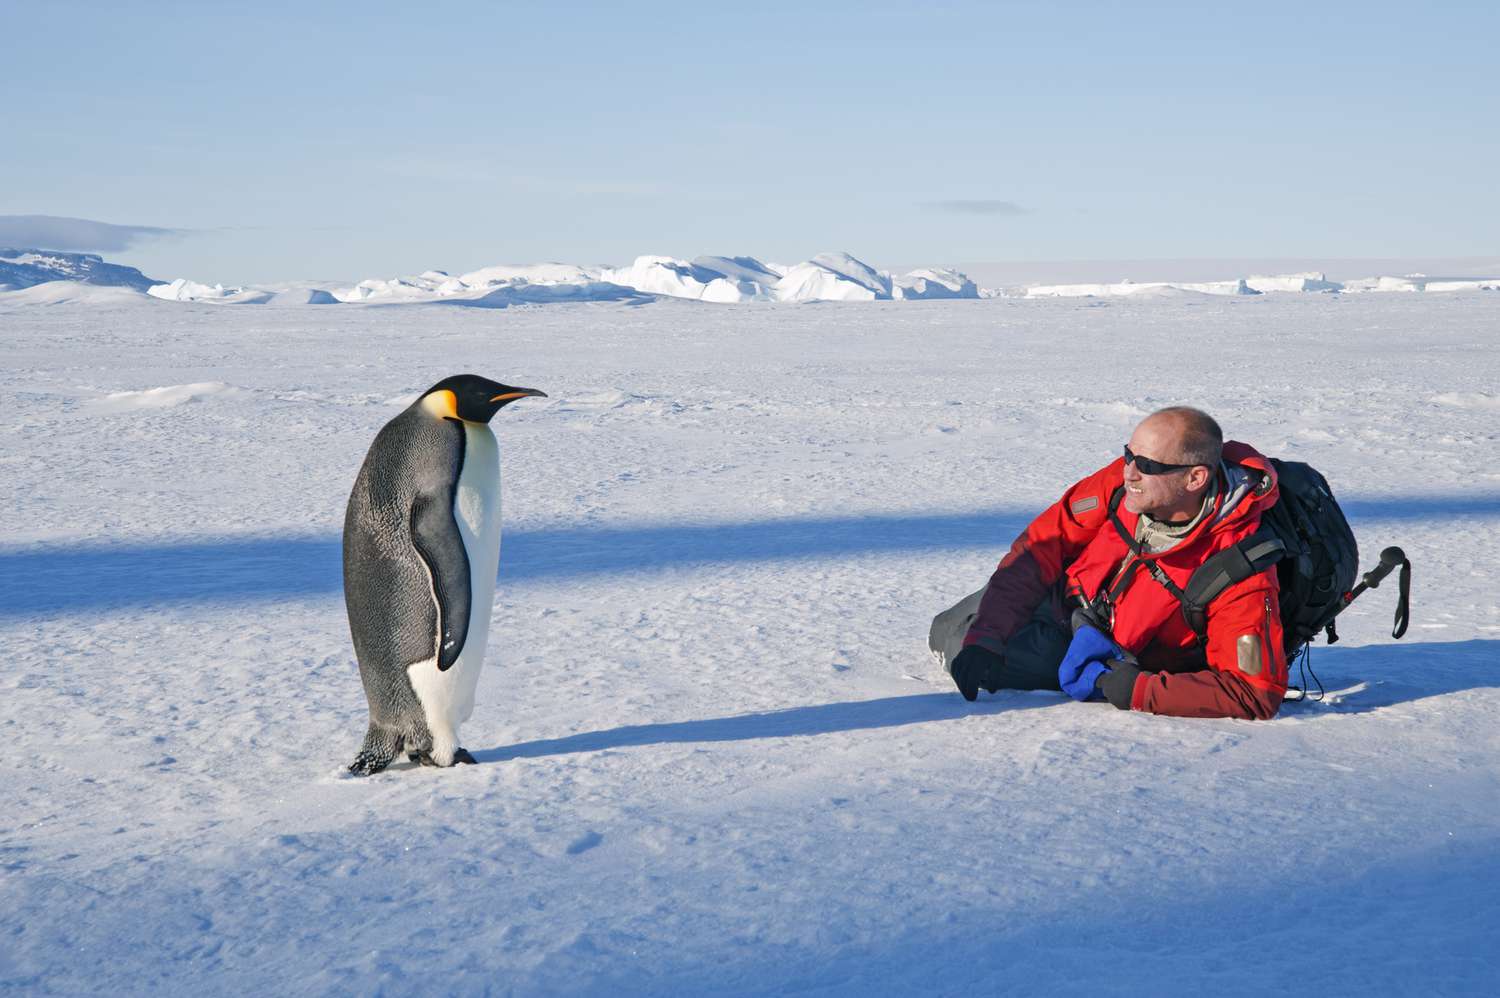 一个男人躺在他身边的冰,接近皇帝企鹅站着不动。”>
          </noscript>
         </div>
        </div>
        <figcaption id=